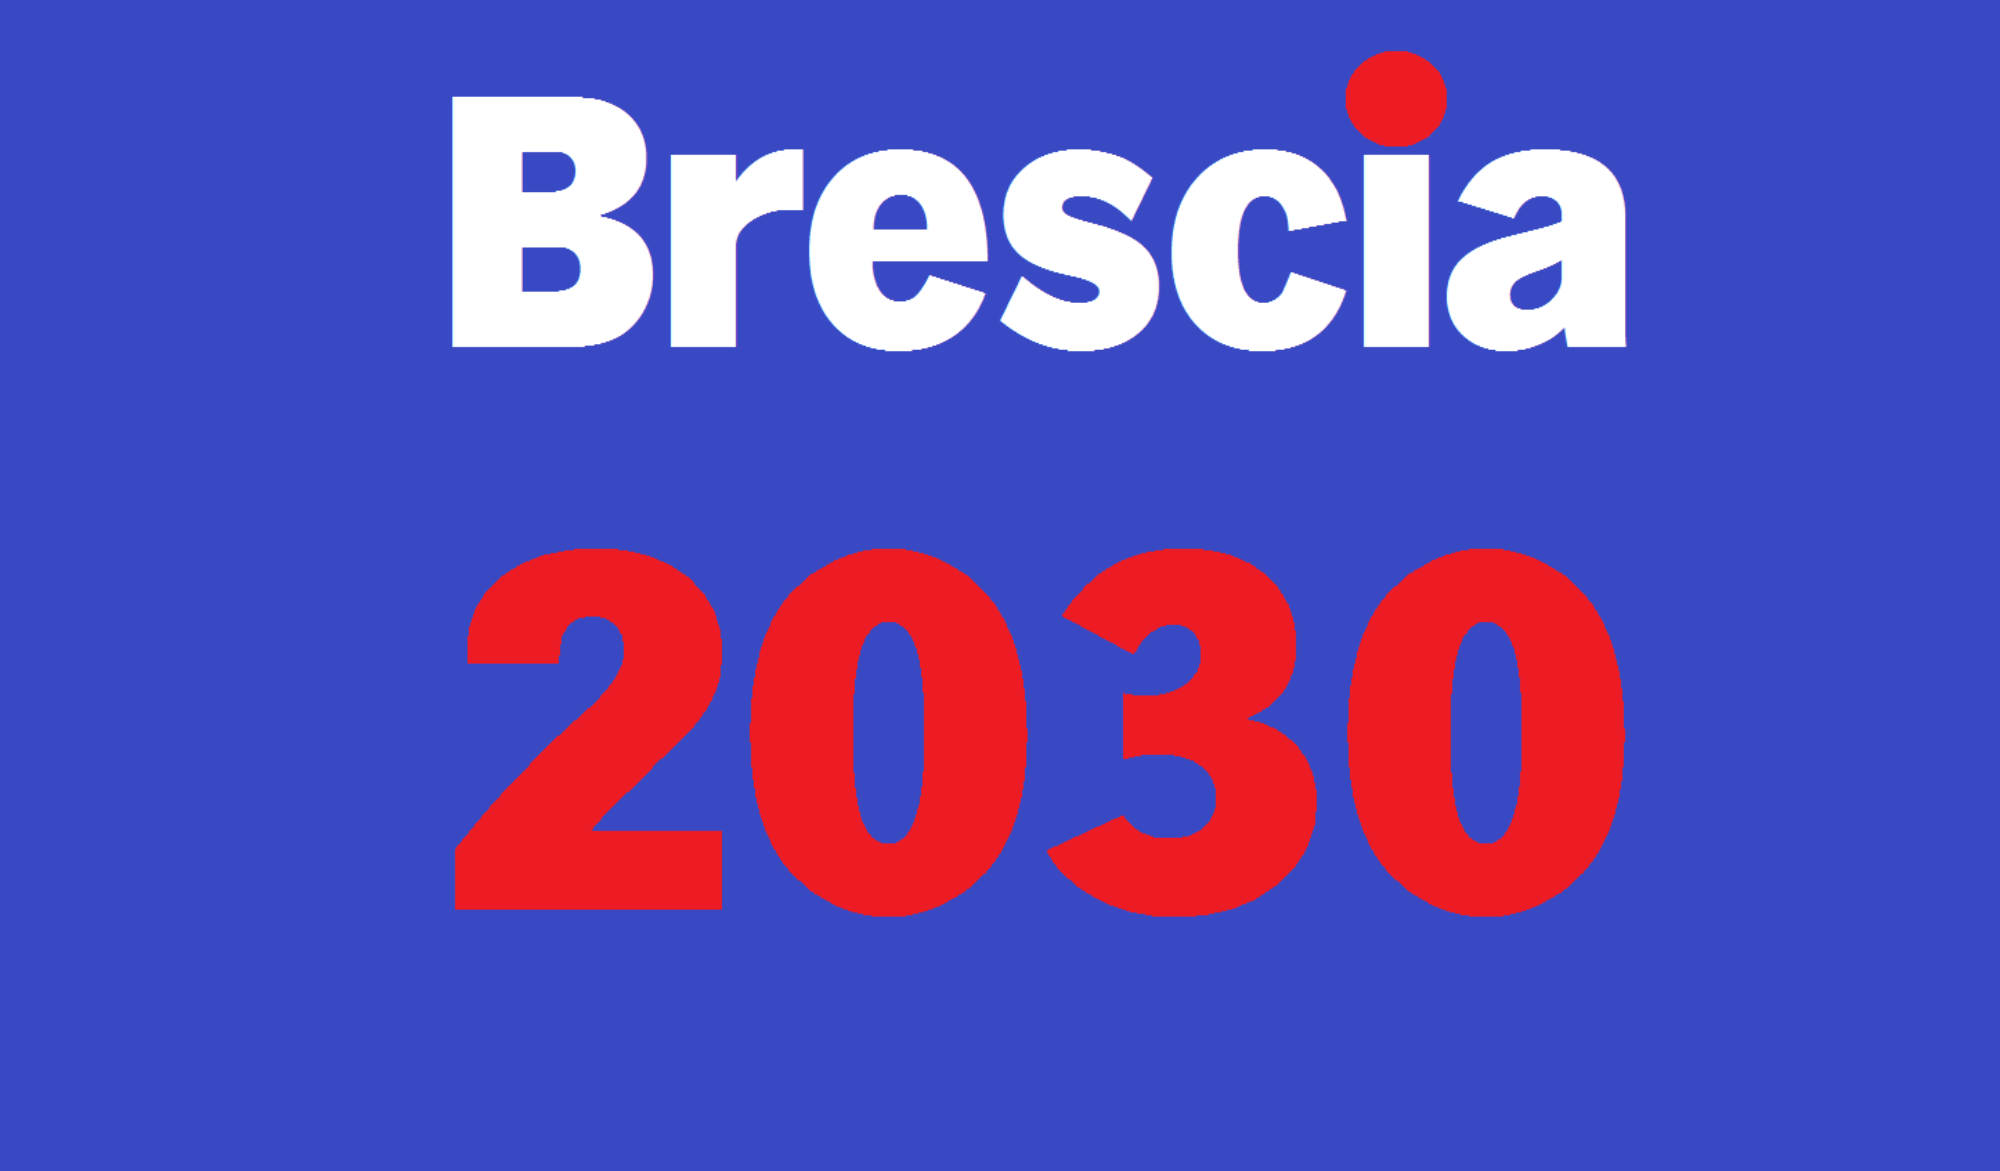 BRESCIA 2030